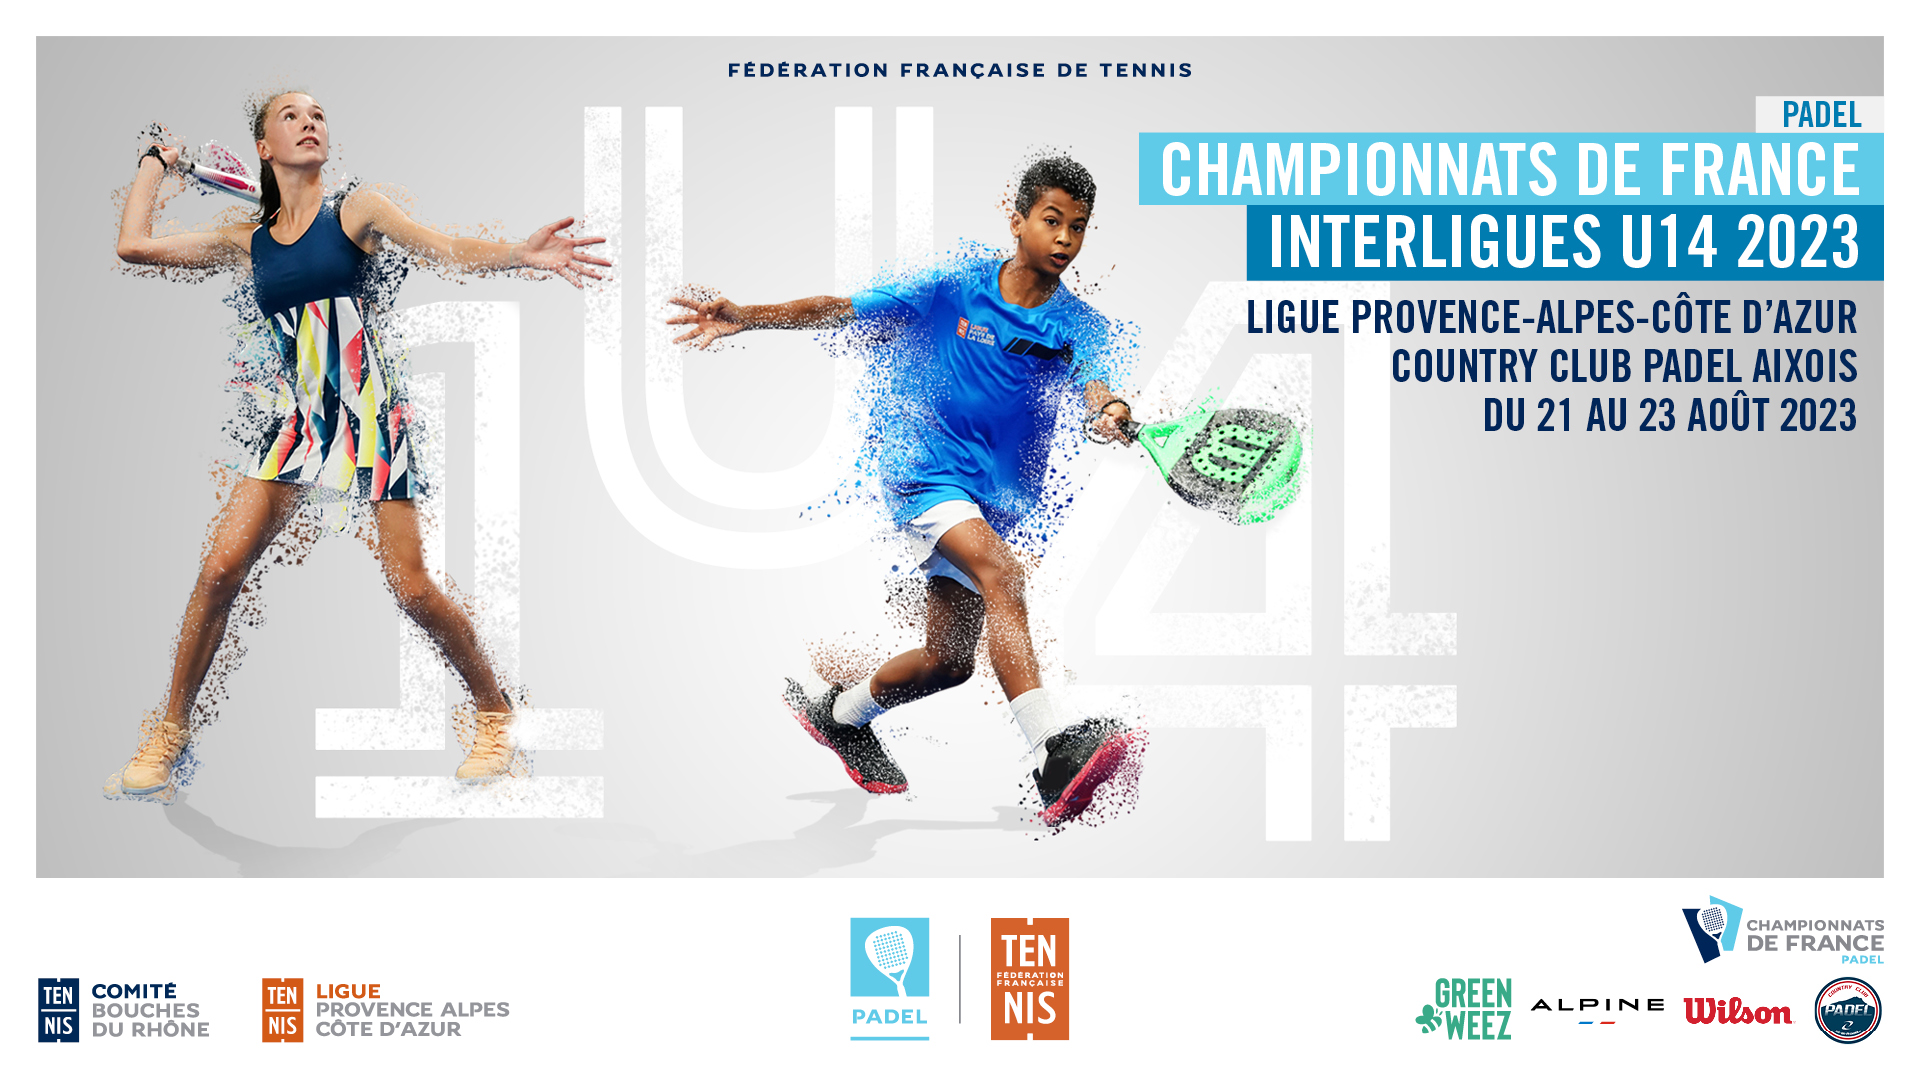 Campeonato de Francia Interliga U14 2023: todo lo que necesitas saber